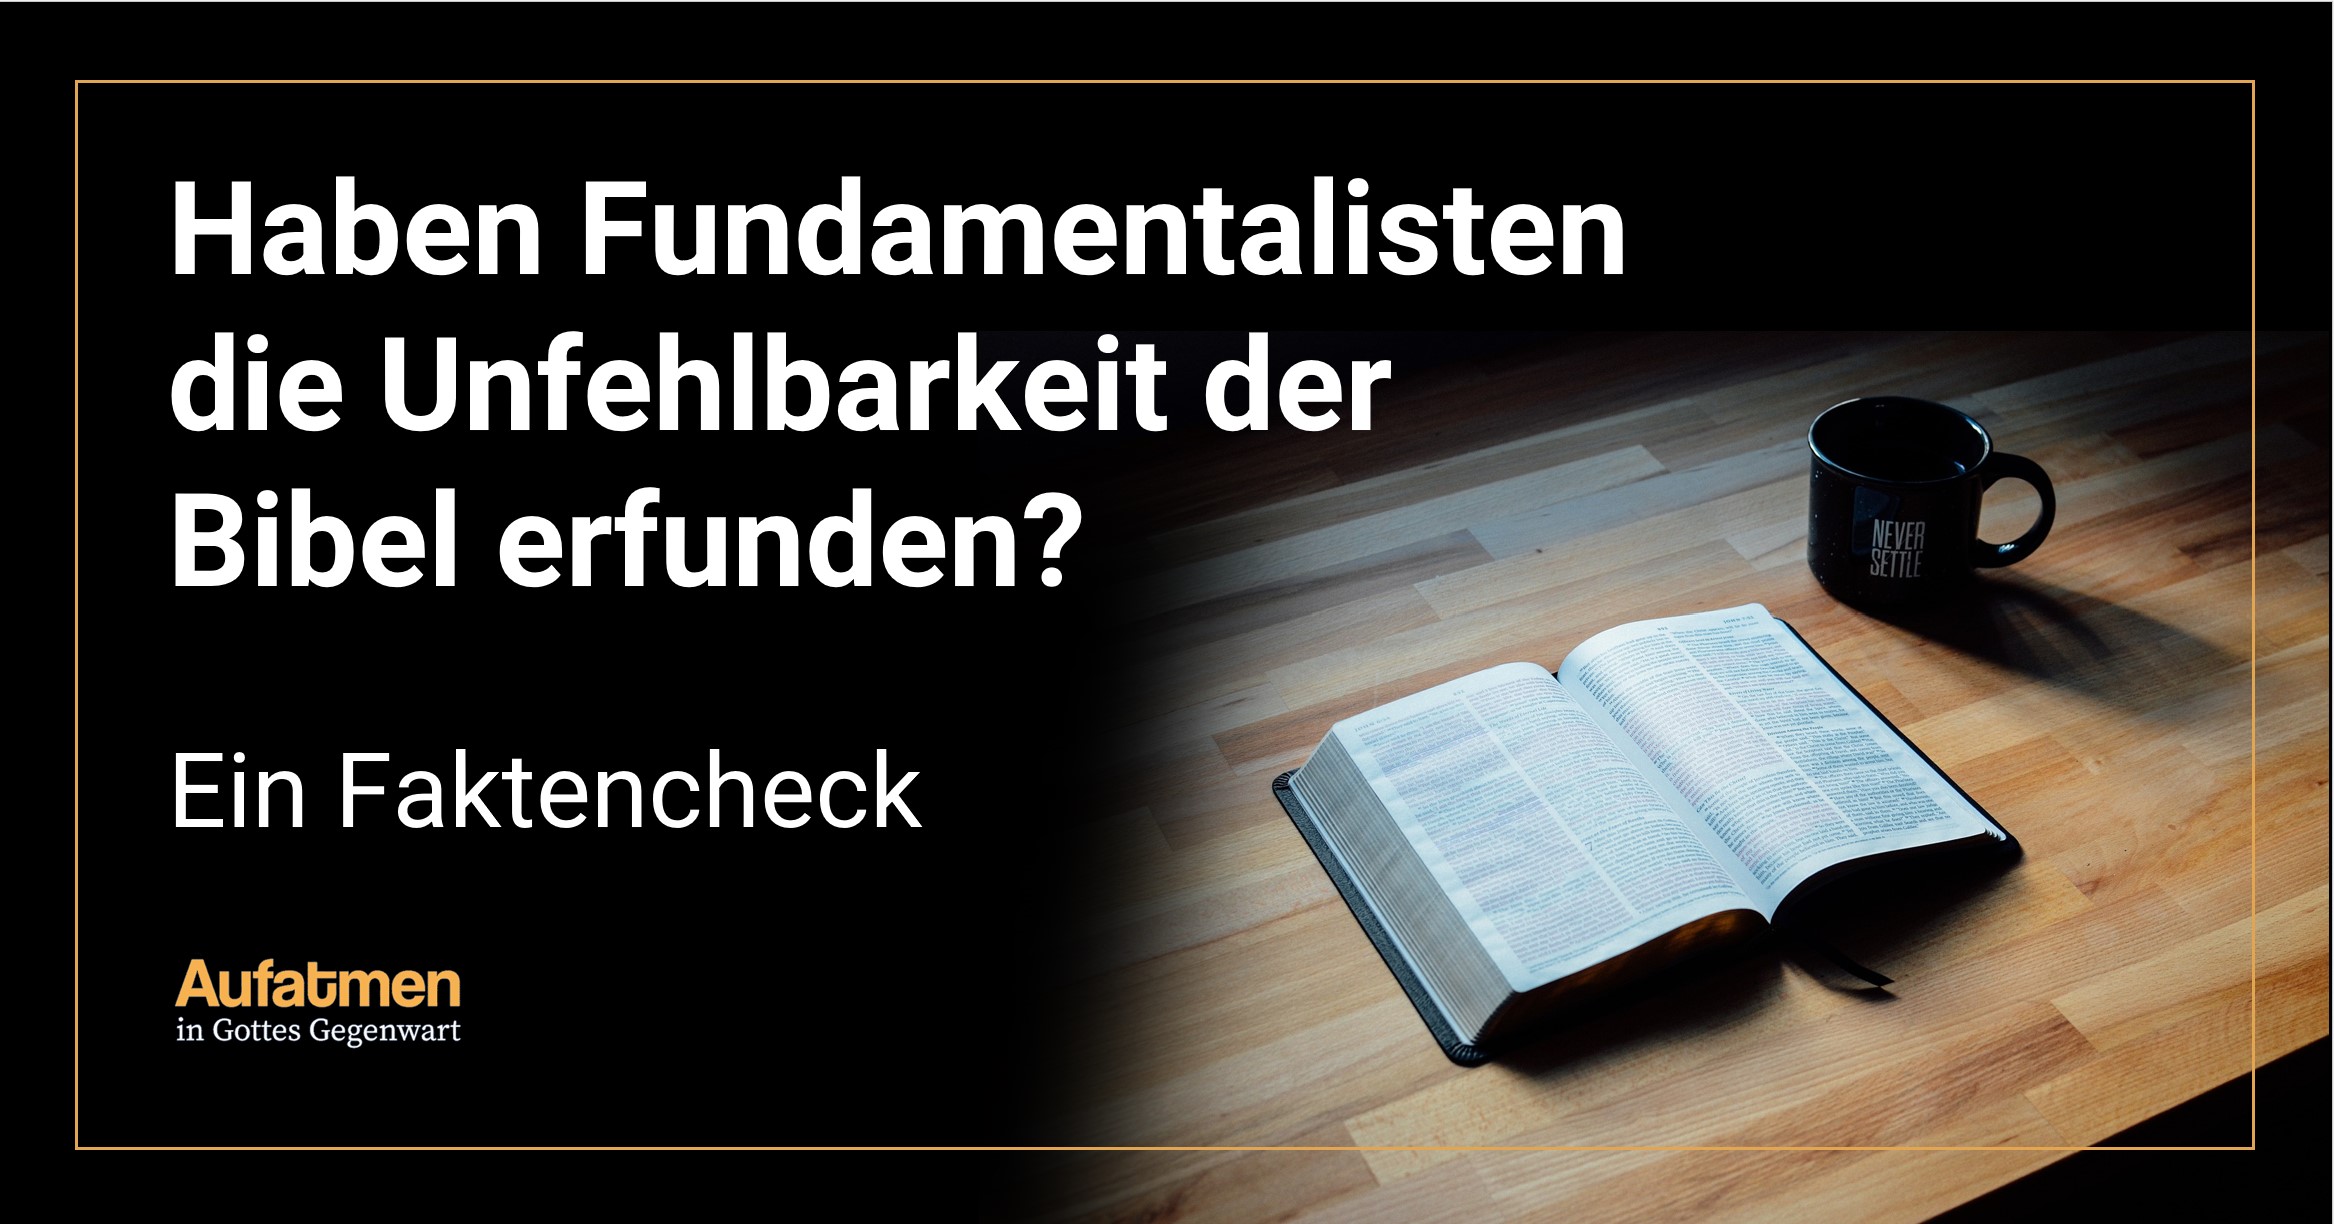 Haben Fundamentalisten die Unfehlbarkeit der Bibel erfunden? – Ein Faktencheck